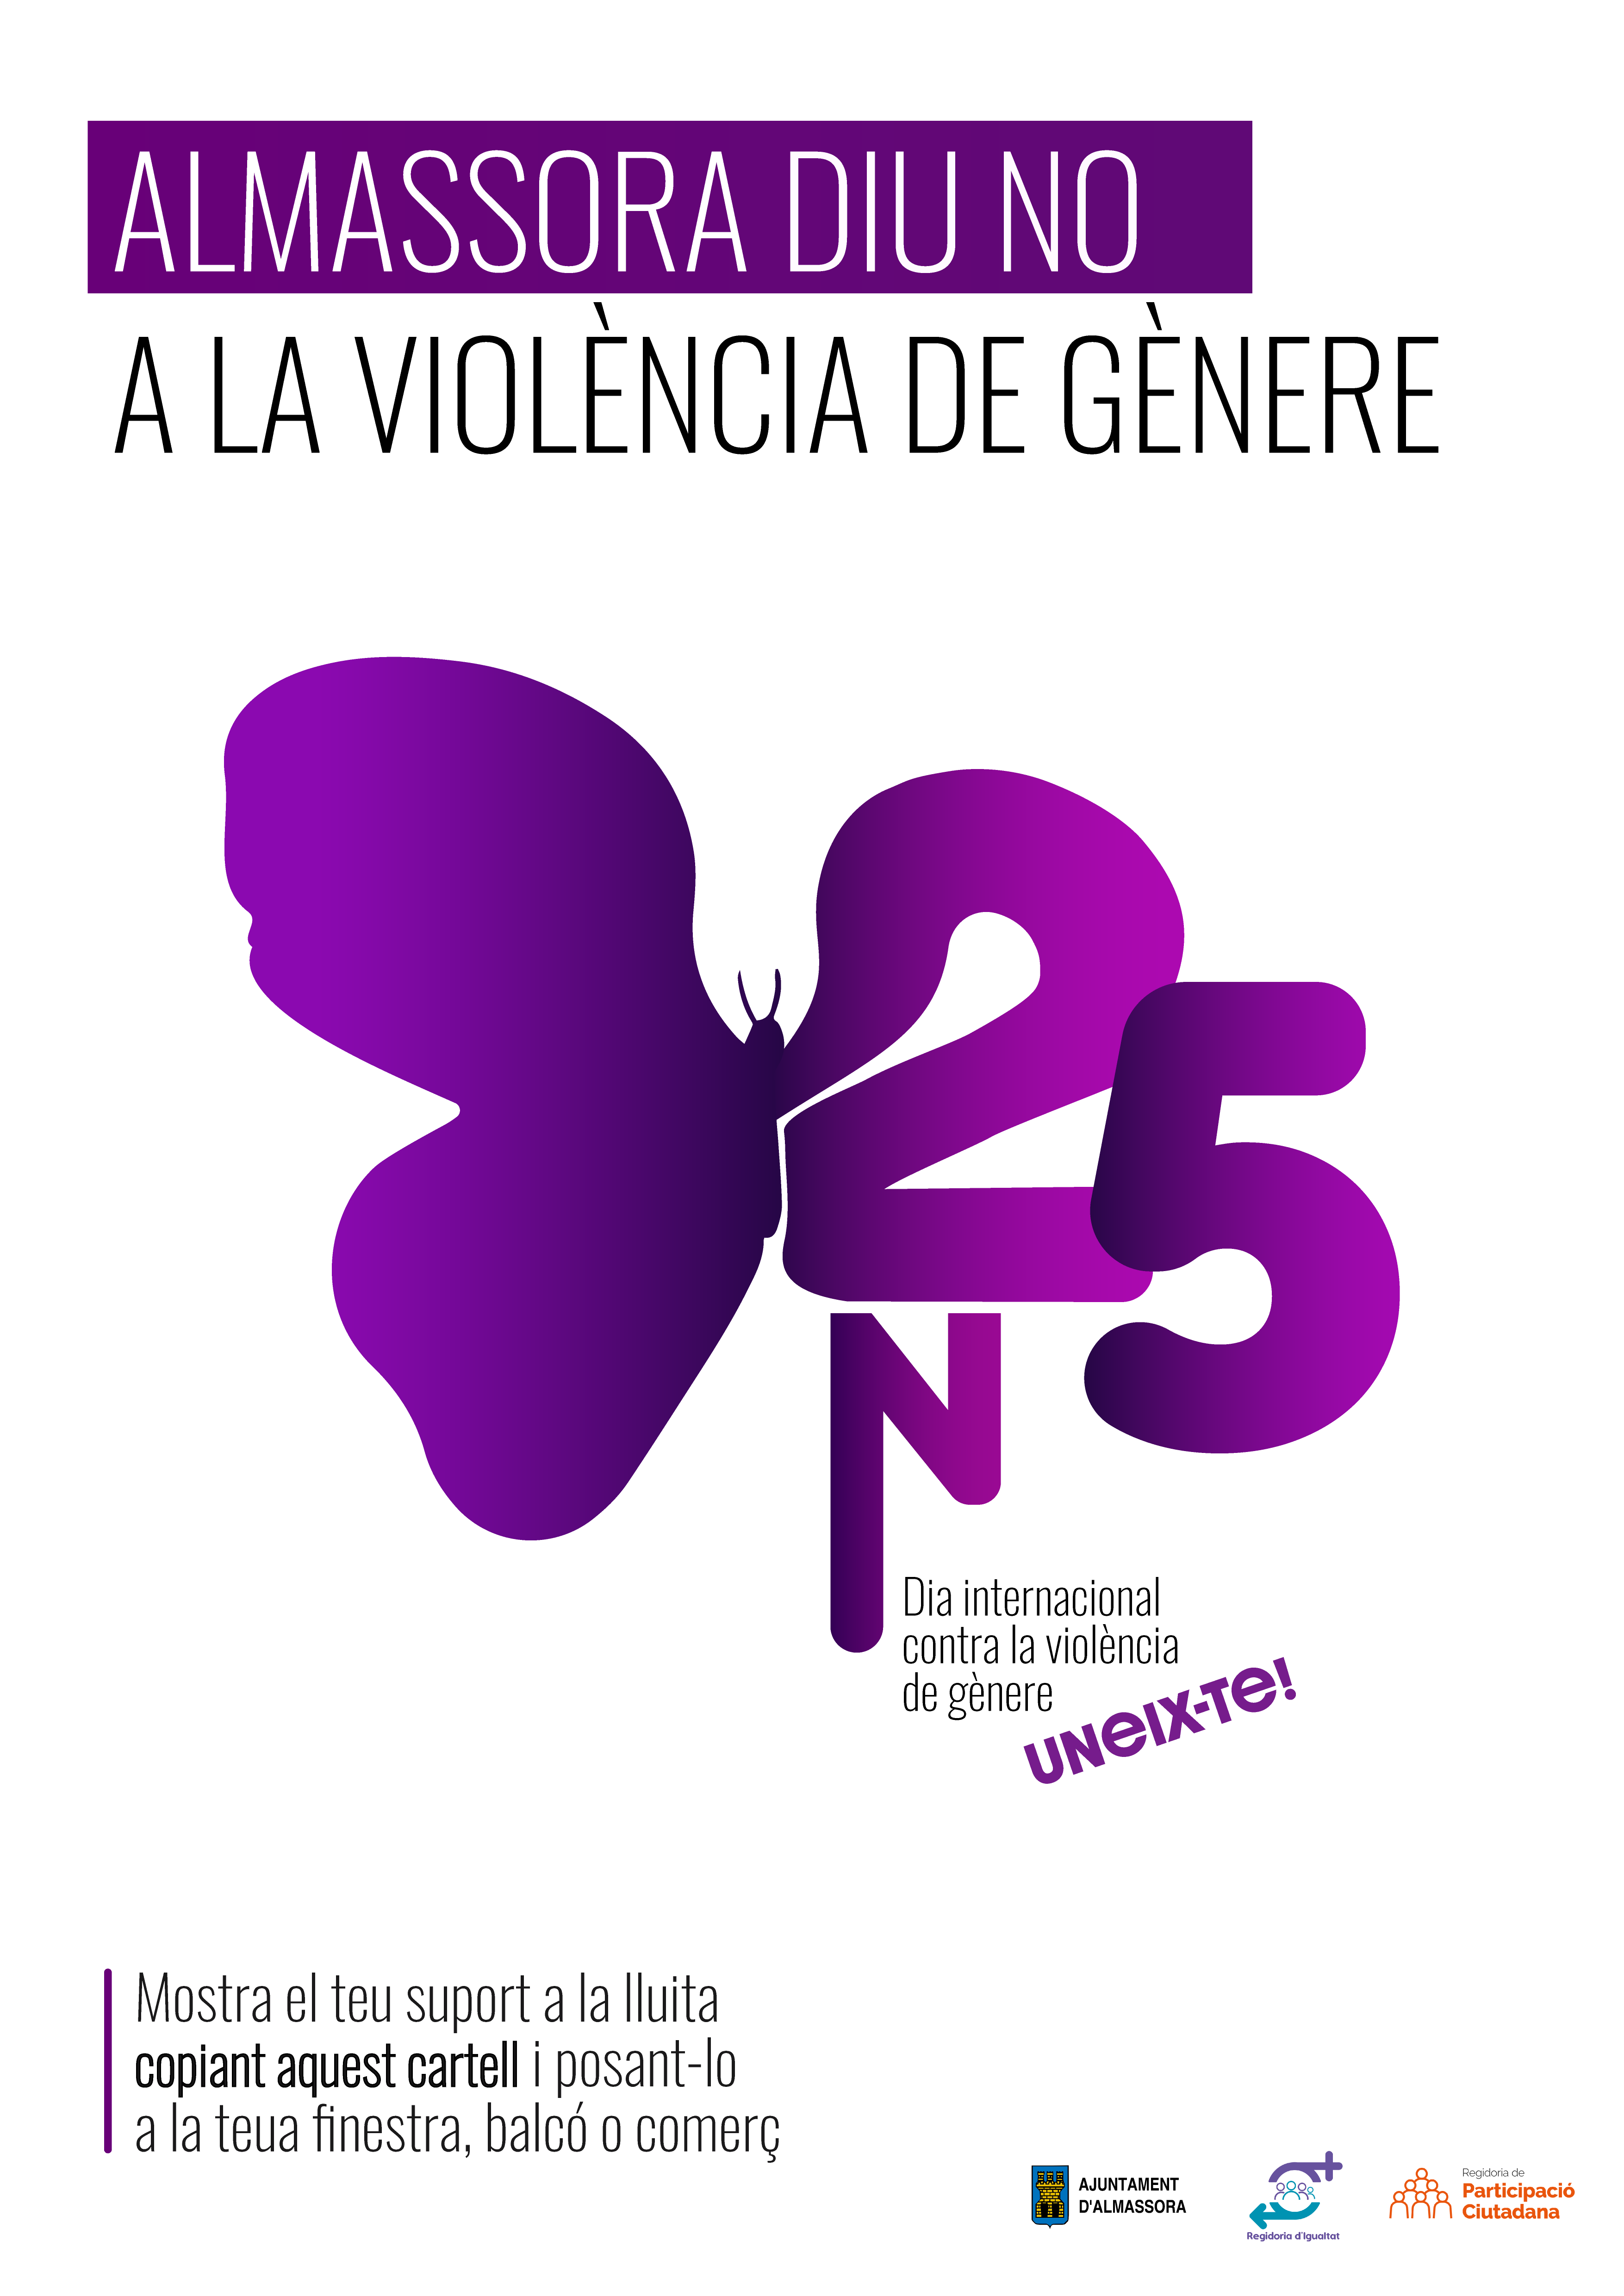 Almassora lucha contra la violencia de género con actividades gratuitas